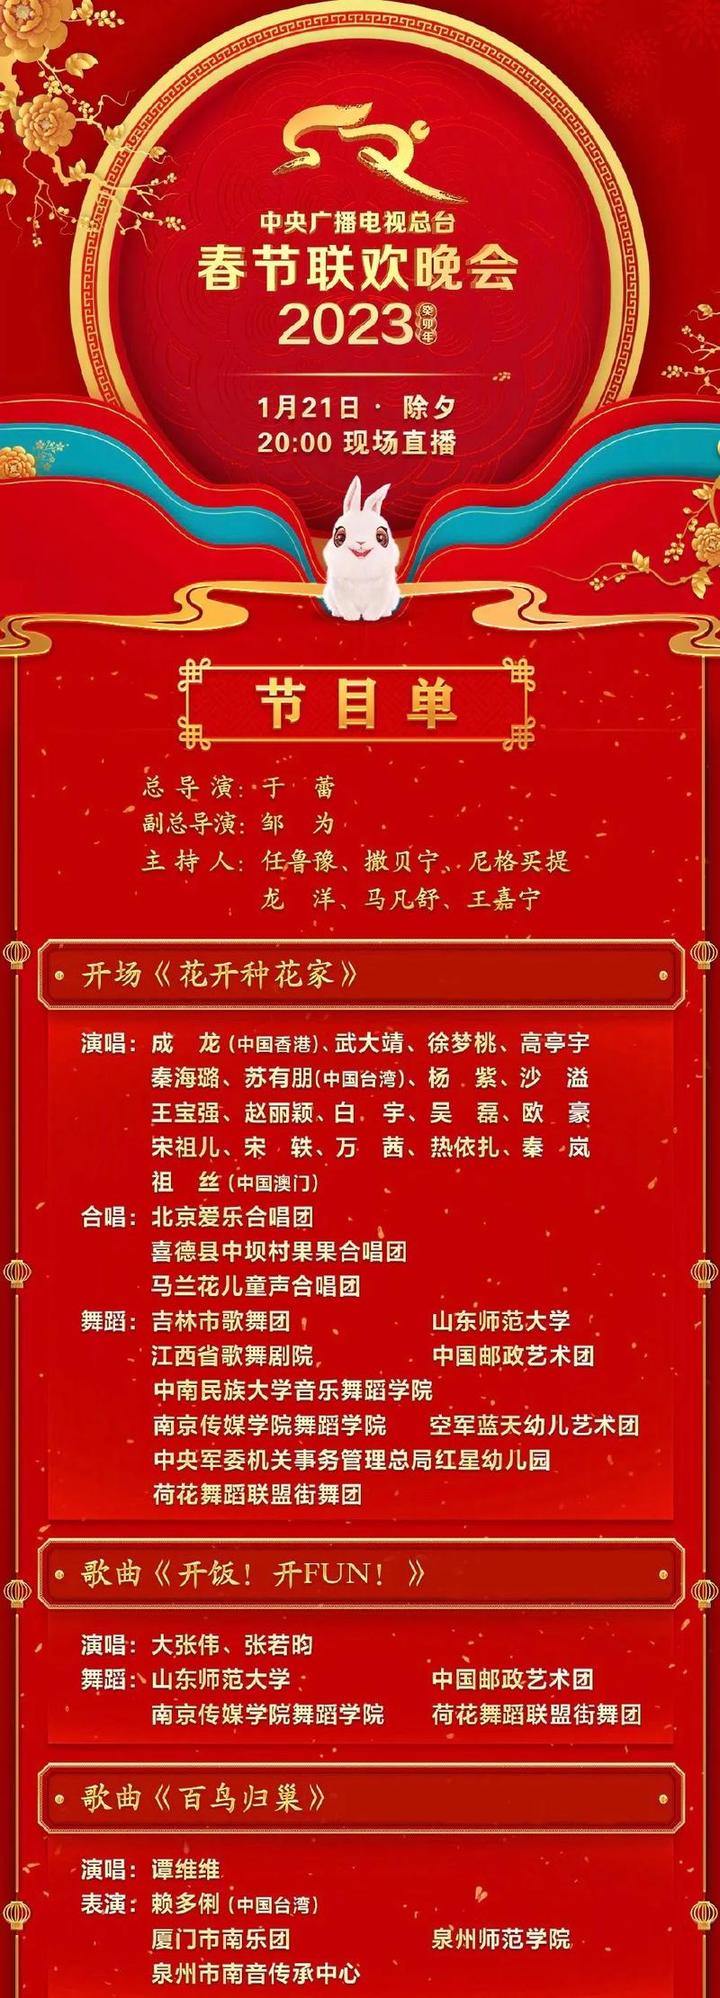 春节联欢晚会节目单公布2023,广东卫视春晚2023年节目单